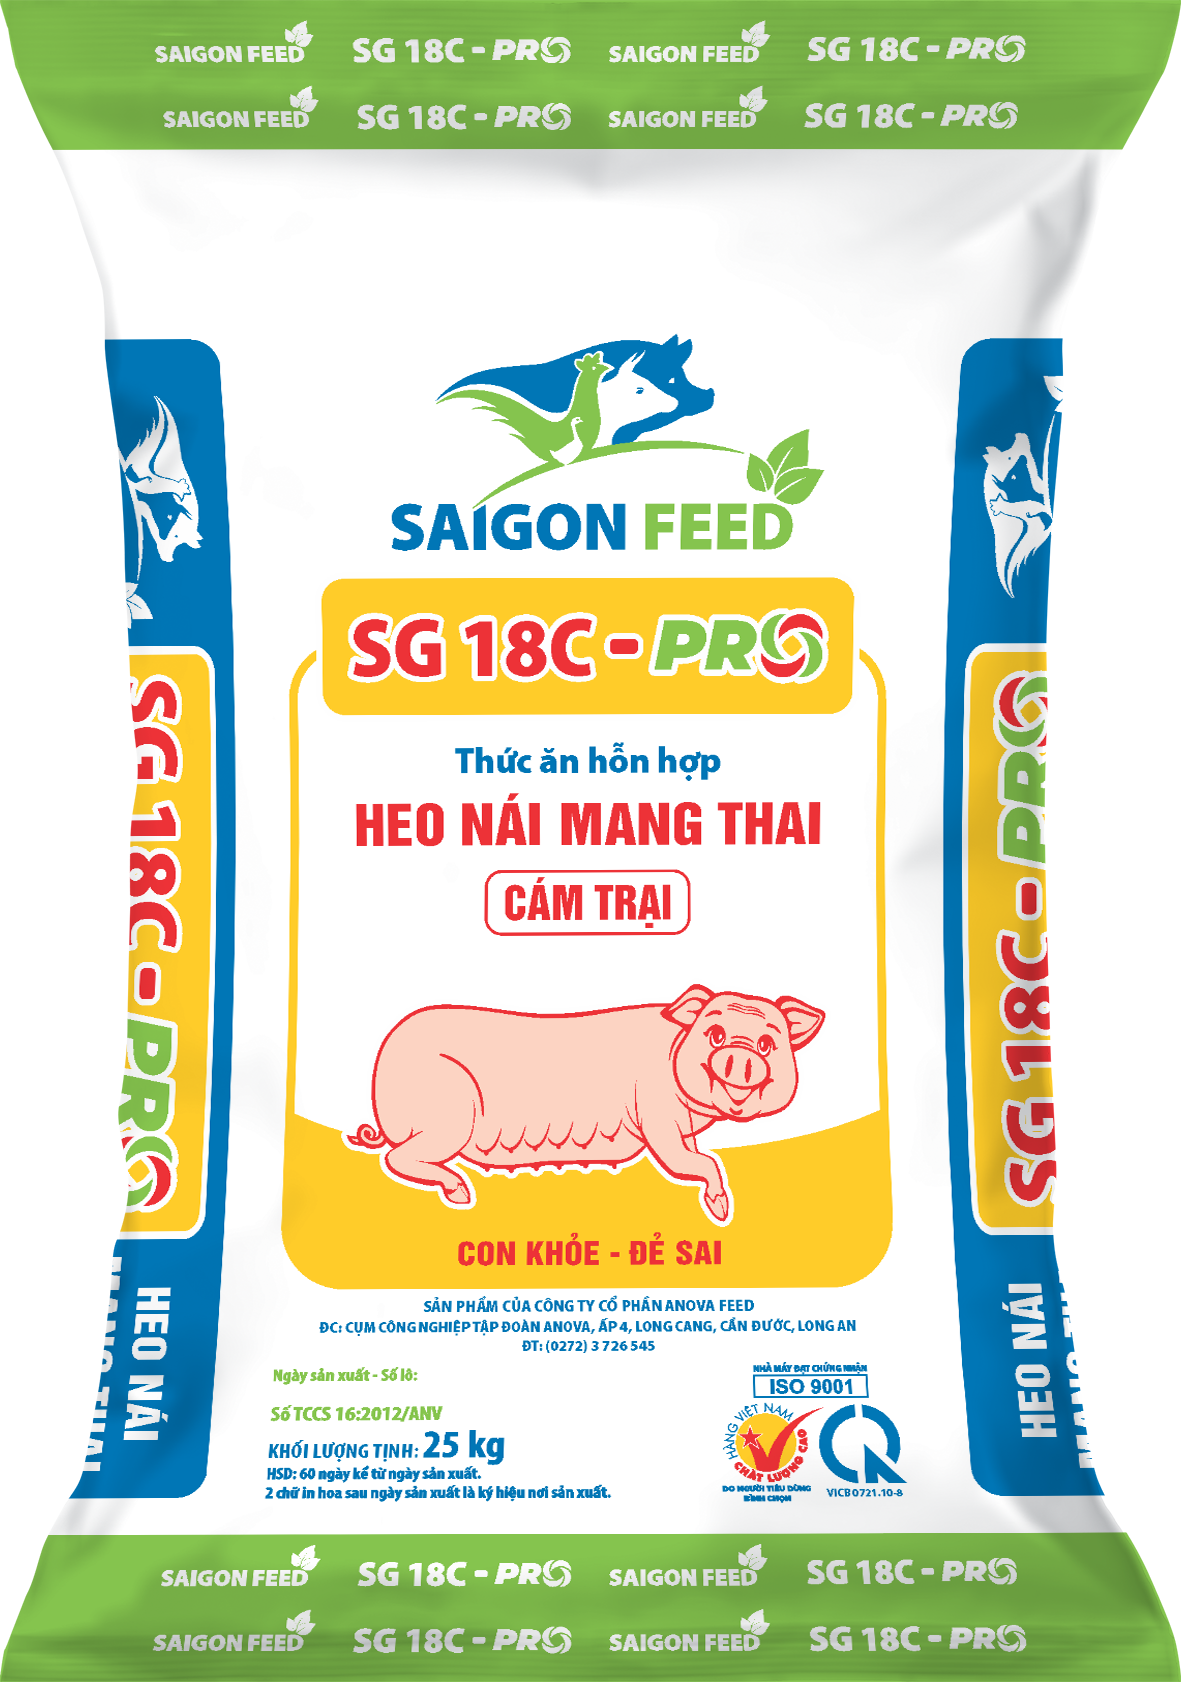 Thức ăn hỗn hợp HEO NÁI MANG THAI SG 18C-PRO